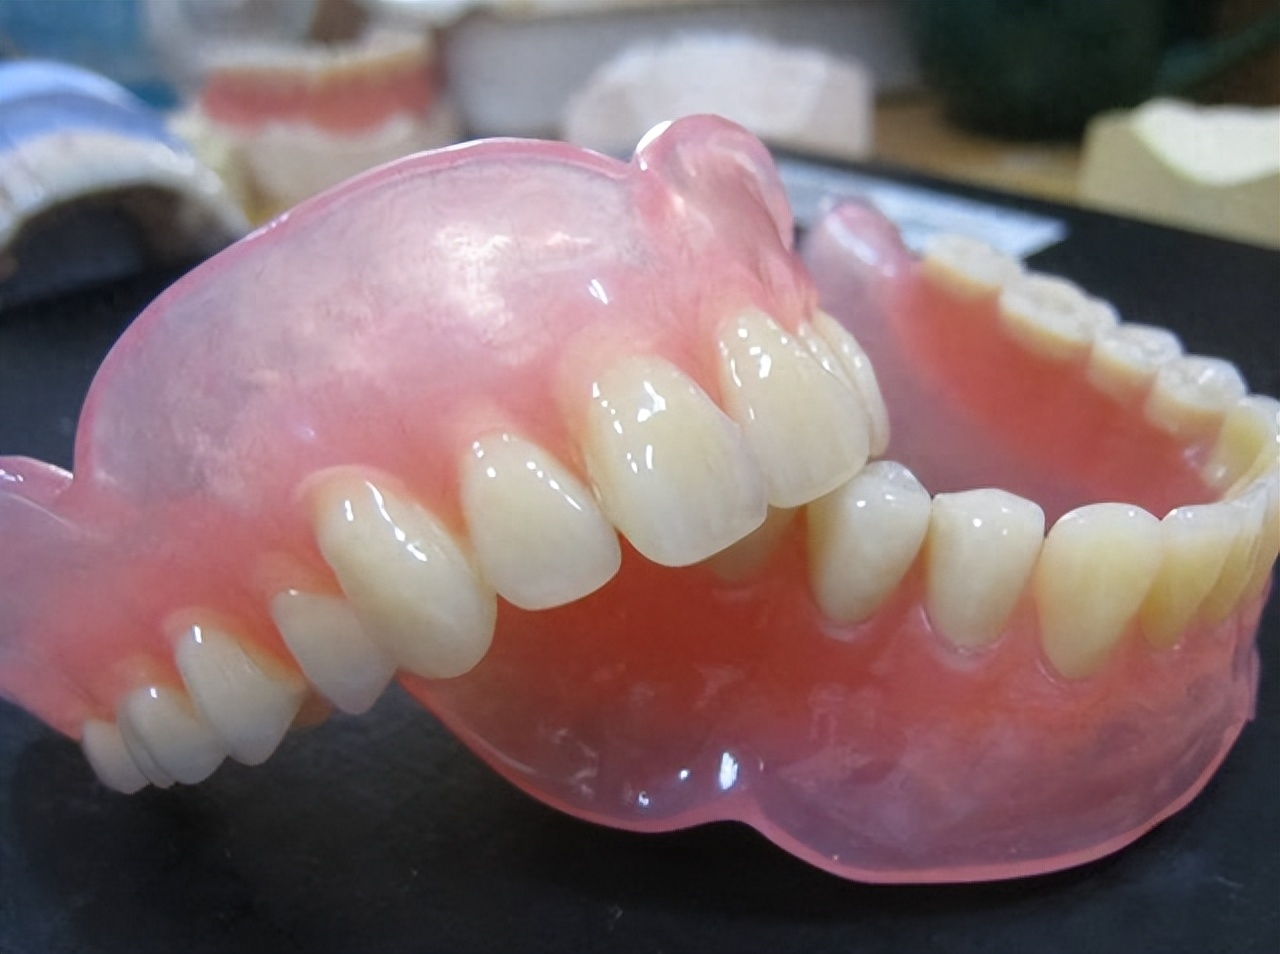 覆蓋式活動假牙Overdenture - 全口重建贋復假牙科 林正忠醫師